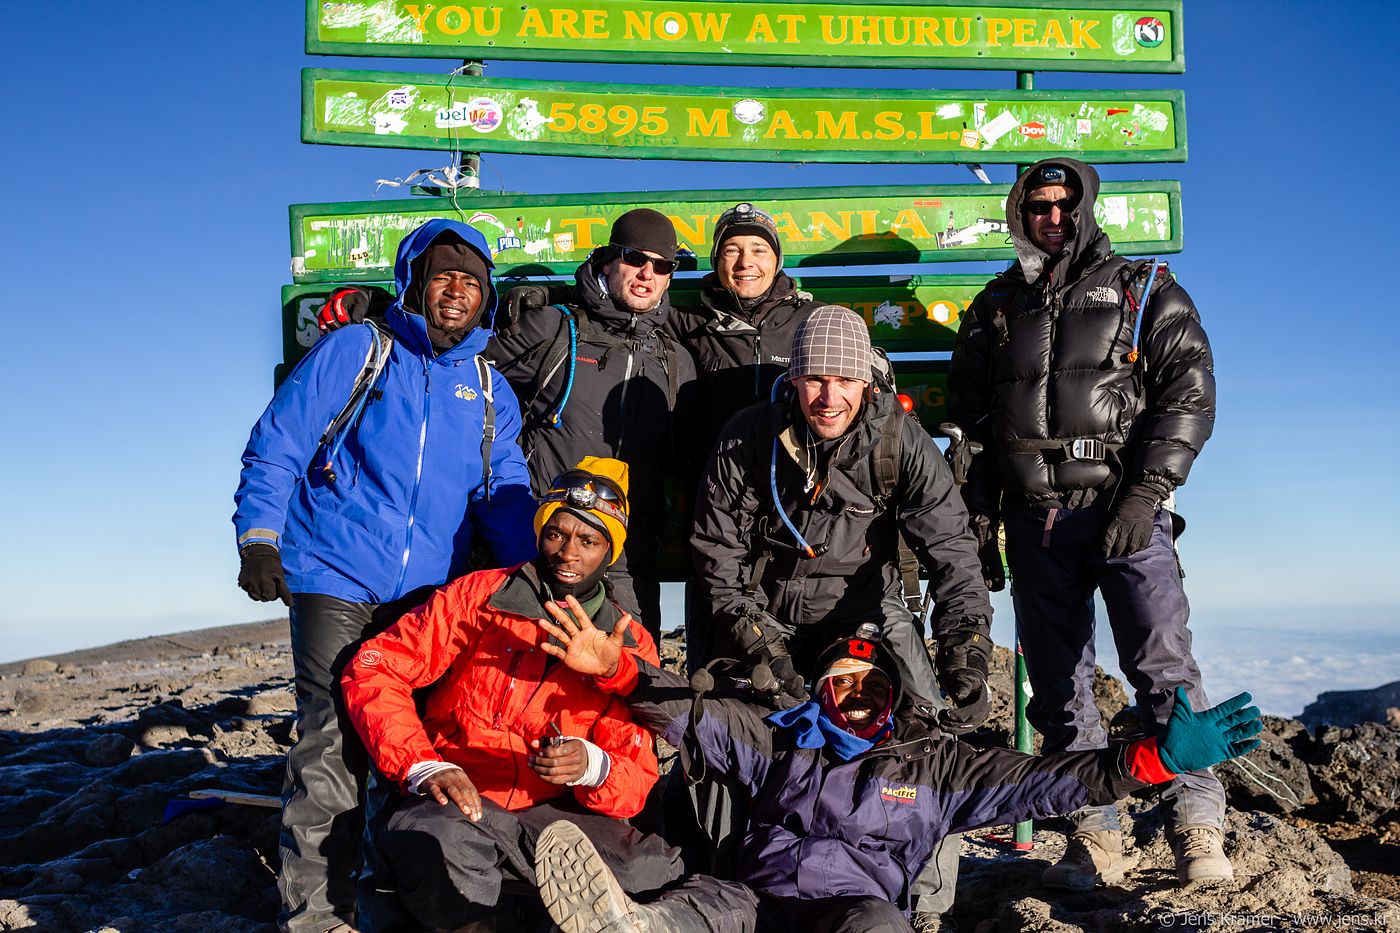 Uhuru Peak. We made it!